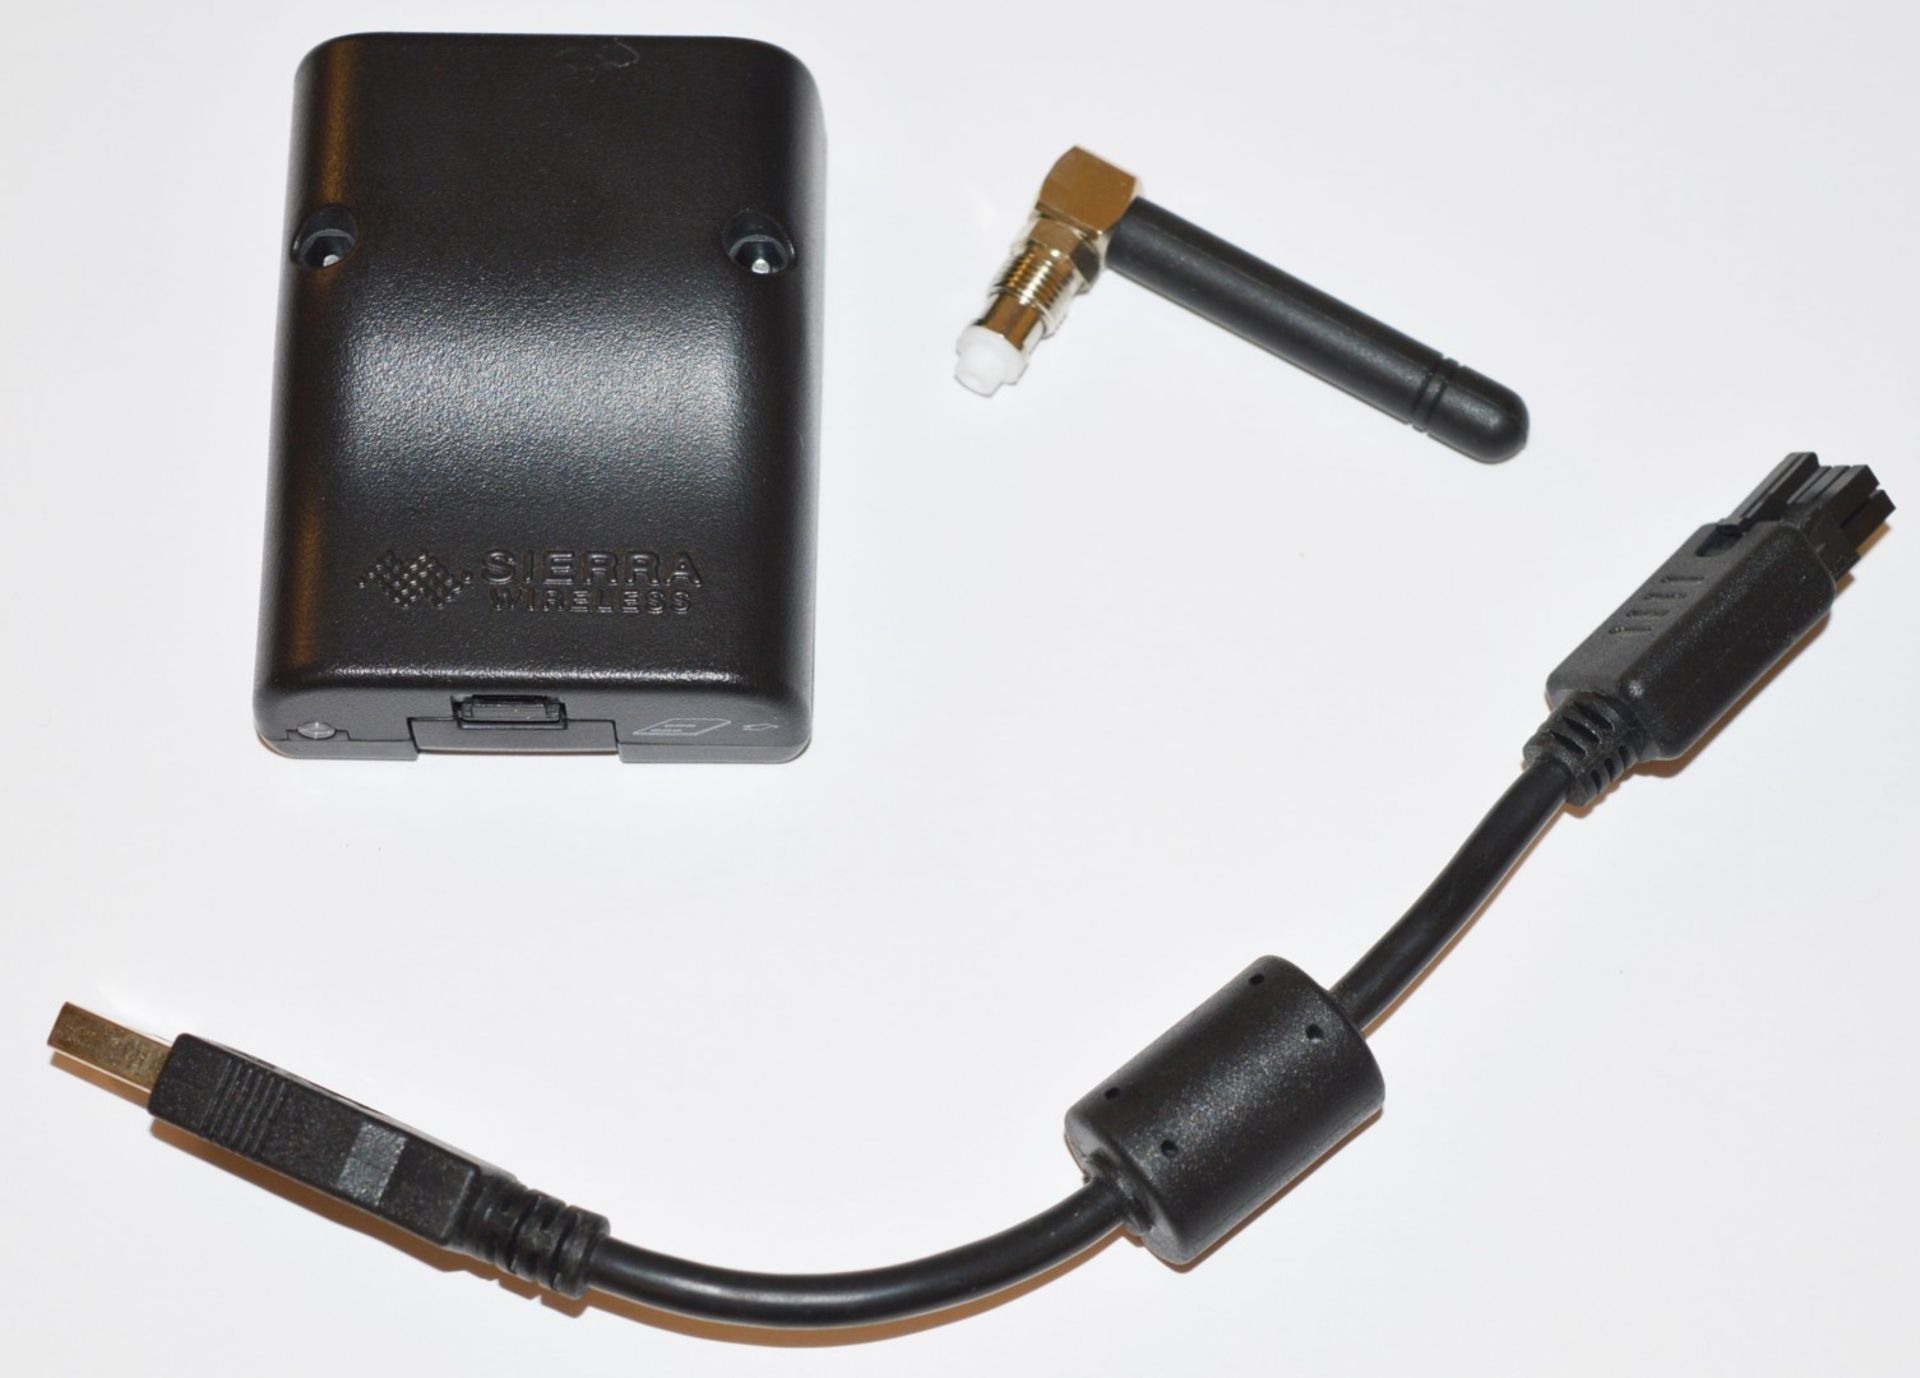 1 x Sierra Wireless Airlink GL6110 USB Programmable Modem - Offers Immediate Connectibityto GSM/GPRS